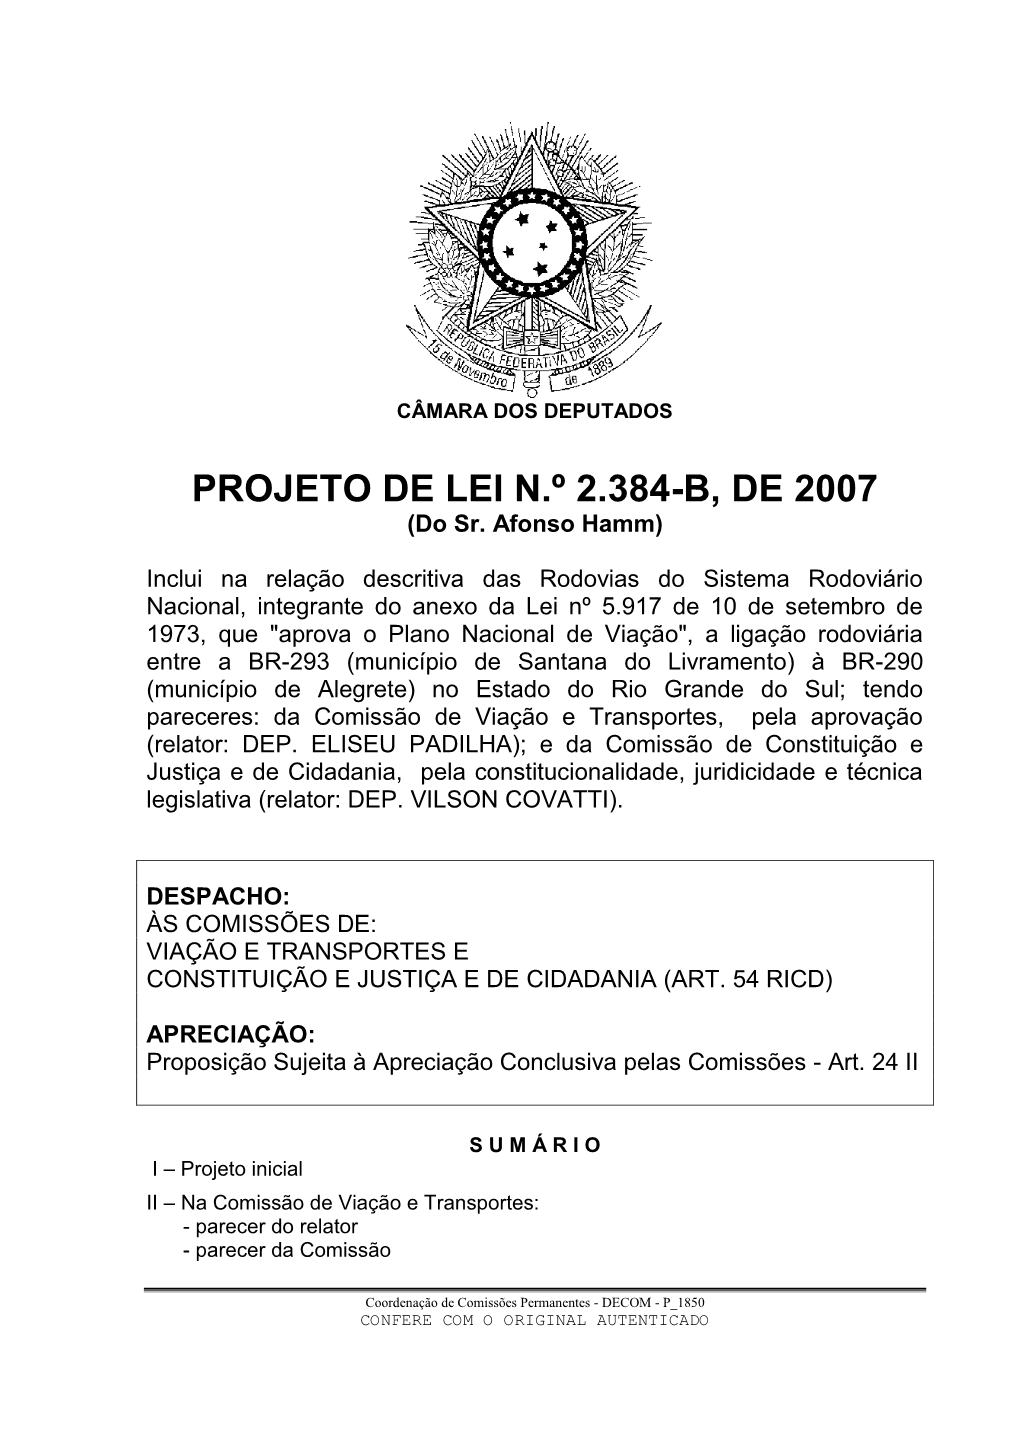 PROJETO DE LEI N.º 2.384-B, DE 2007 (Do Sr